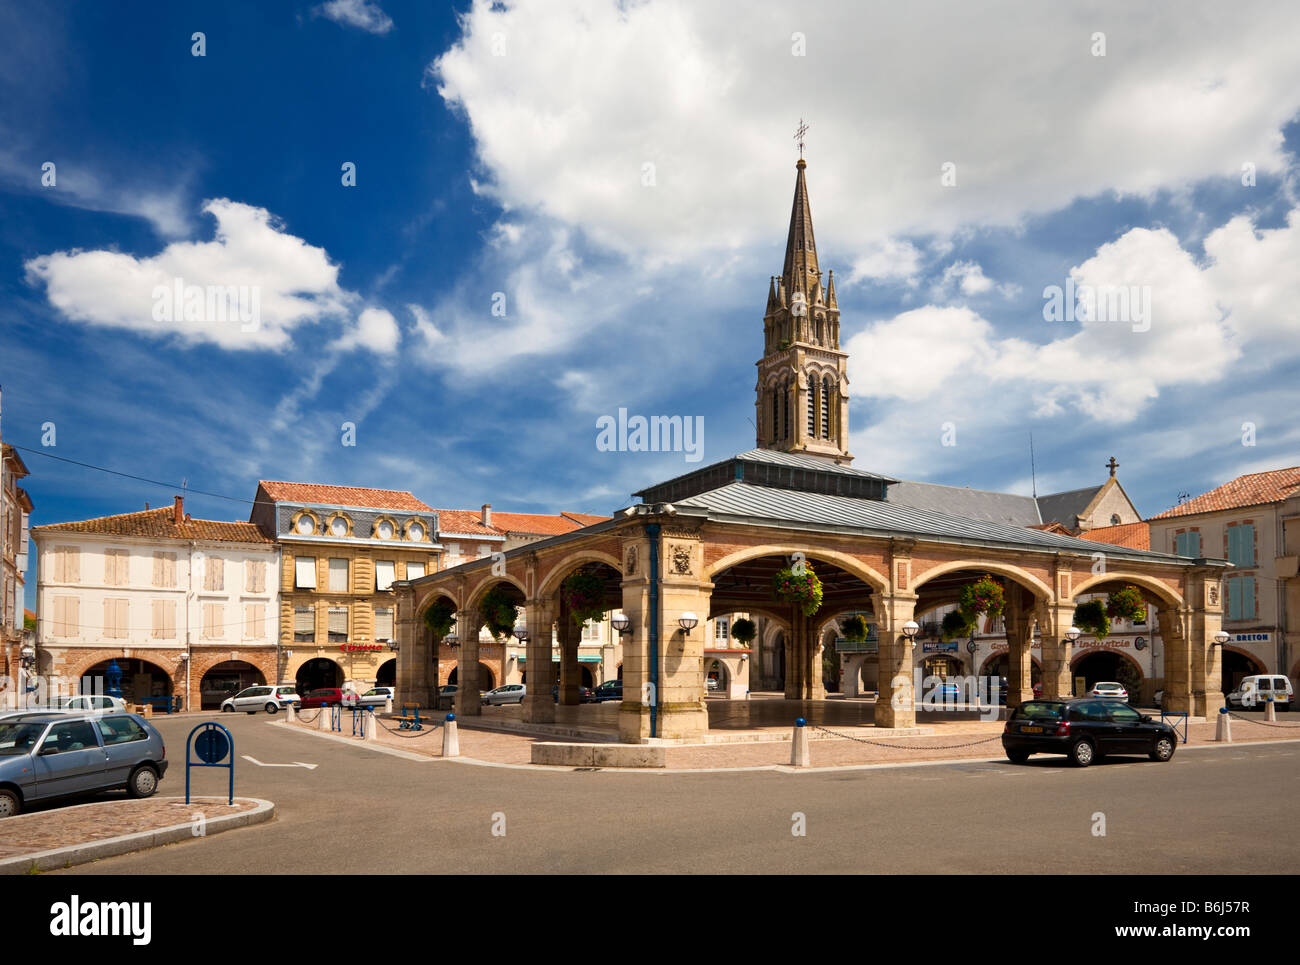 La place du marché couvert à Valence d'Agen, Tarn et Garonne, France Europe Banque D'Images